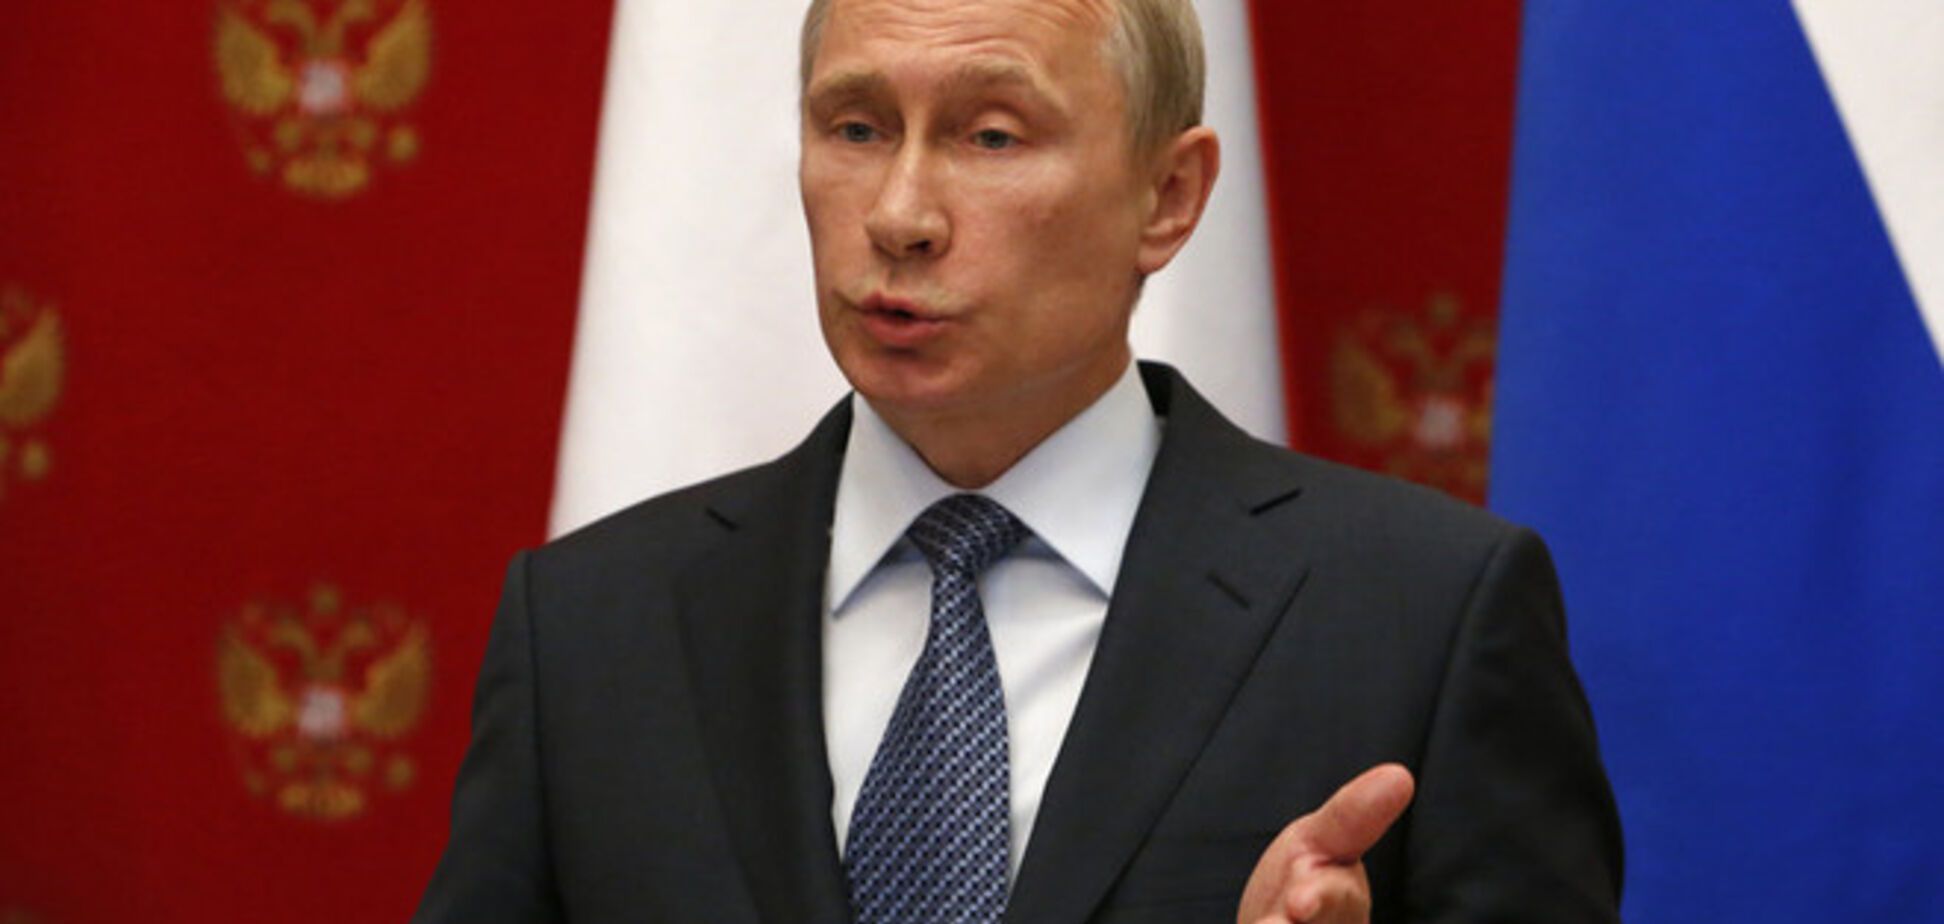 Главу аннексированного Крыма изберут из трех кандидатов Путина